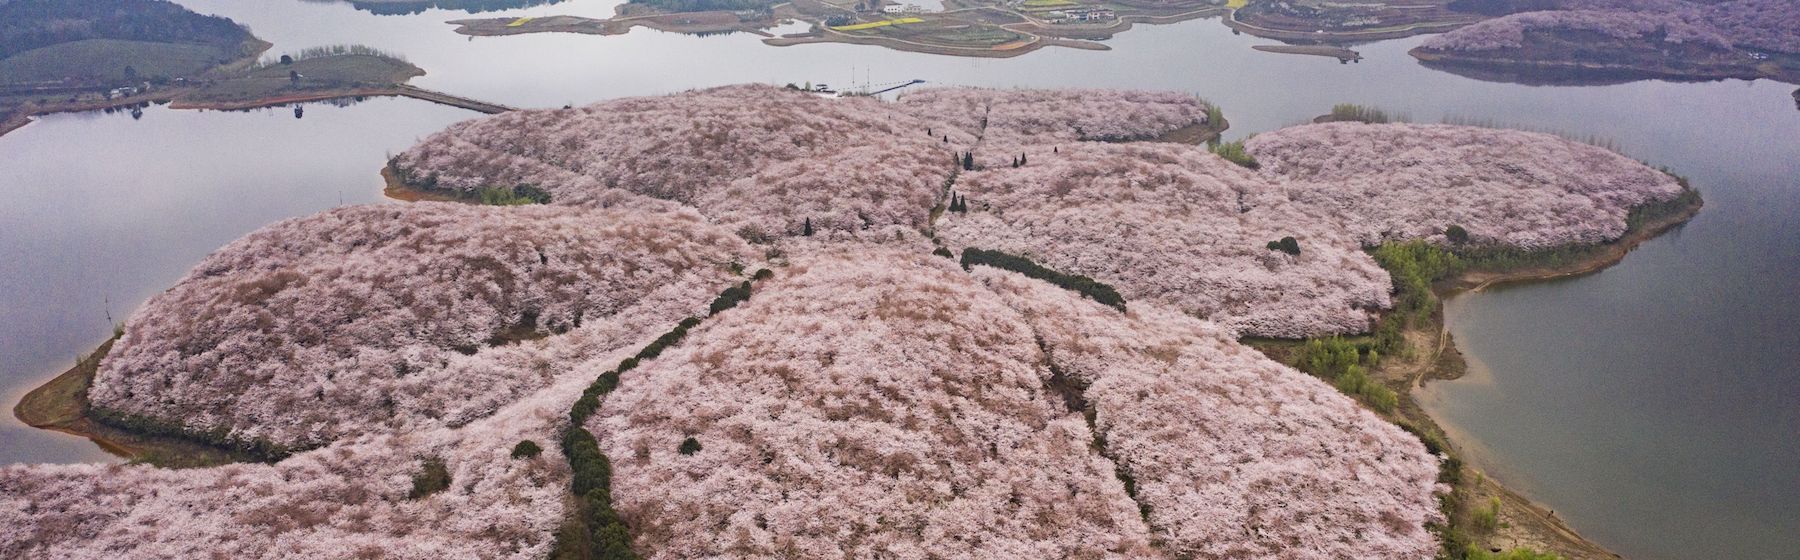 La sfolgorante fioritura dei ciliegi del Guizhou, nel sudovest cinese